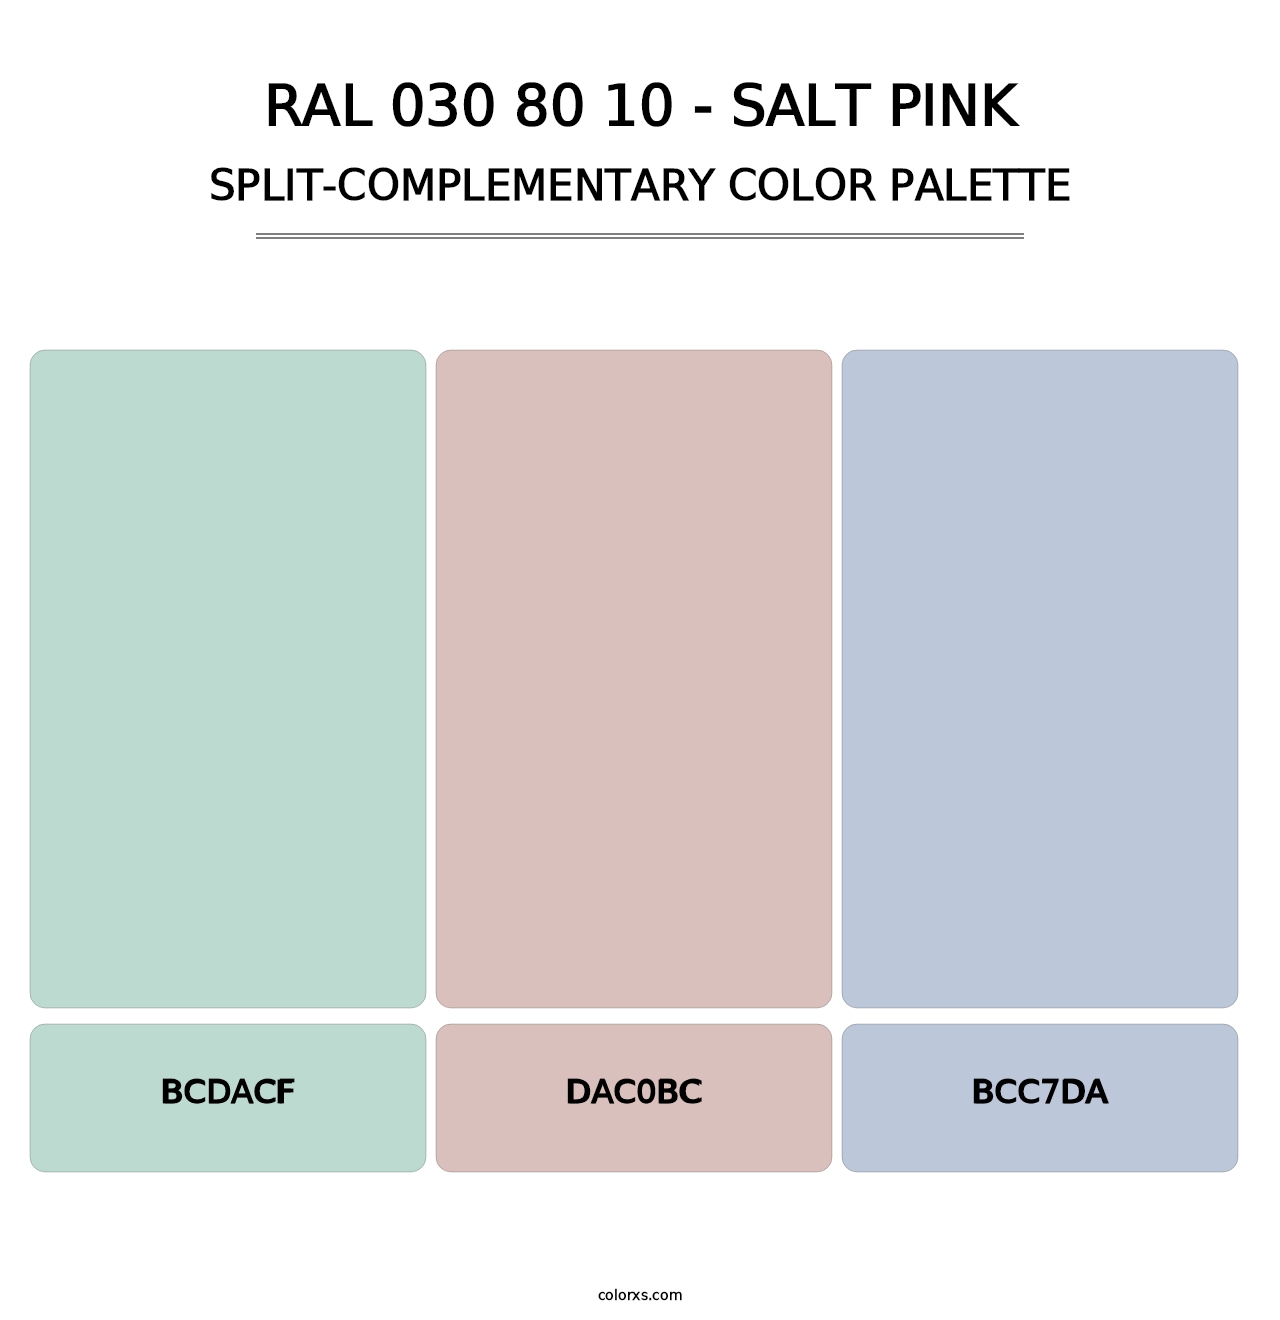 RAL 030 80 10 - Salt Pink - Split-Complementary Color Palette